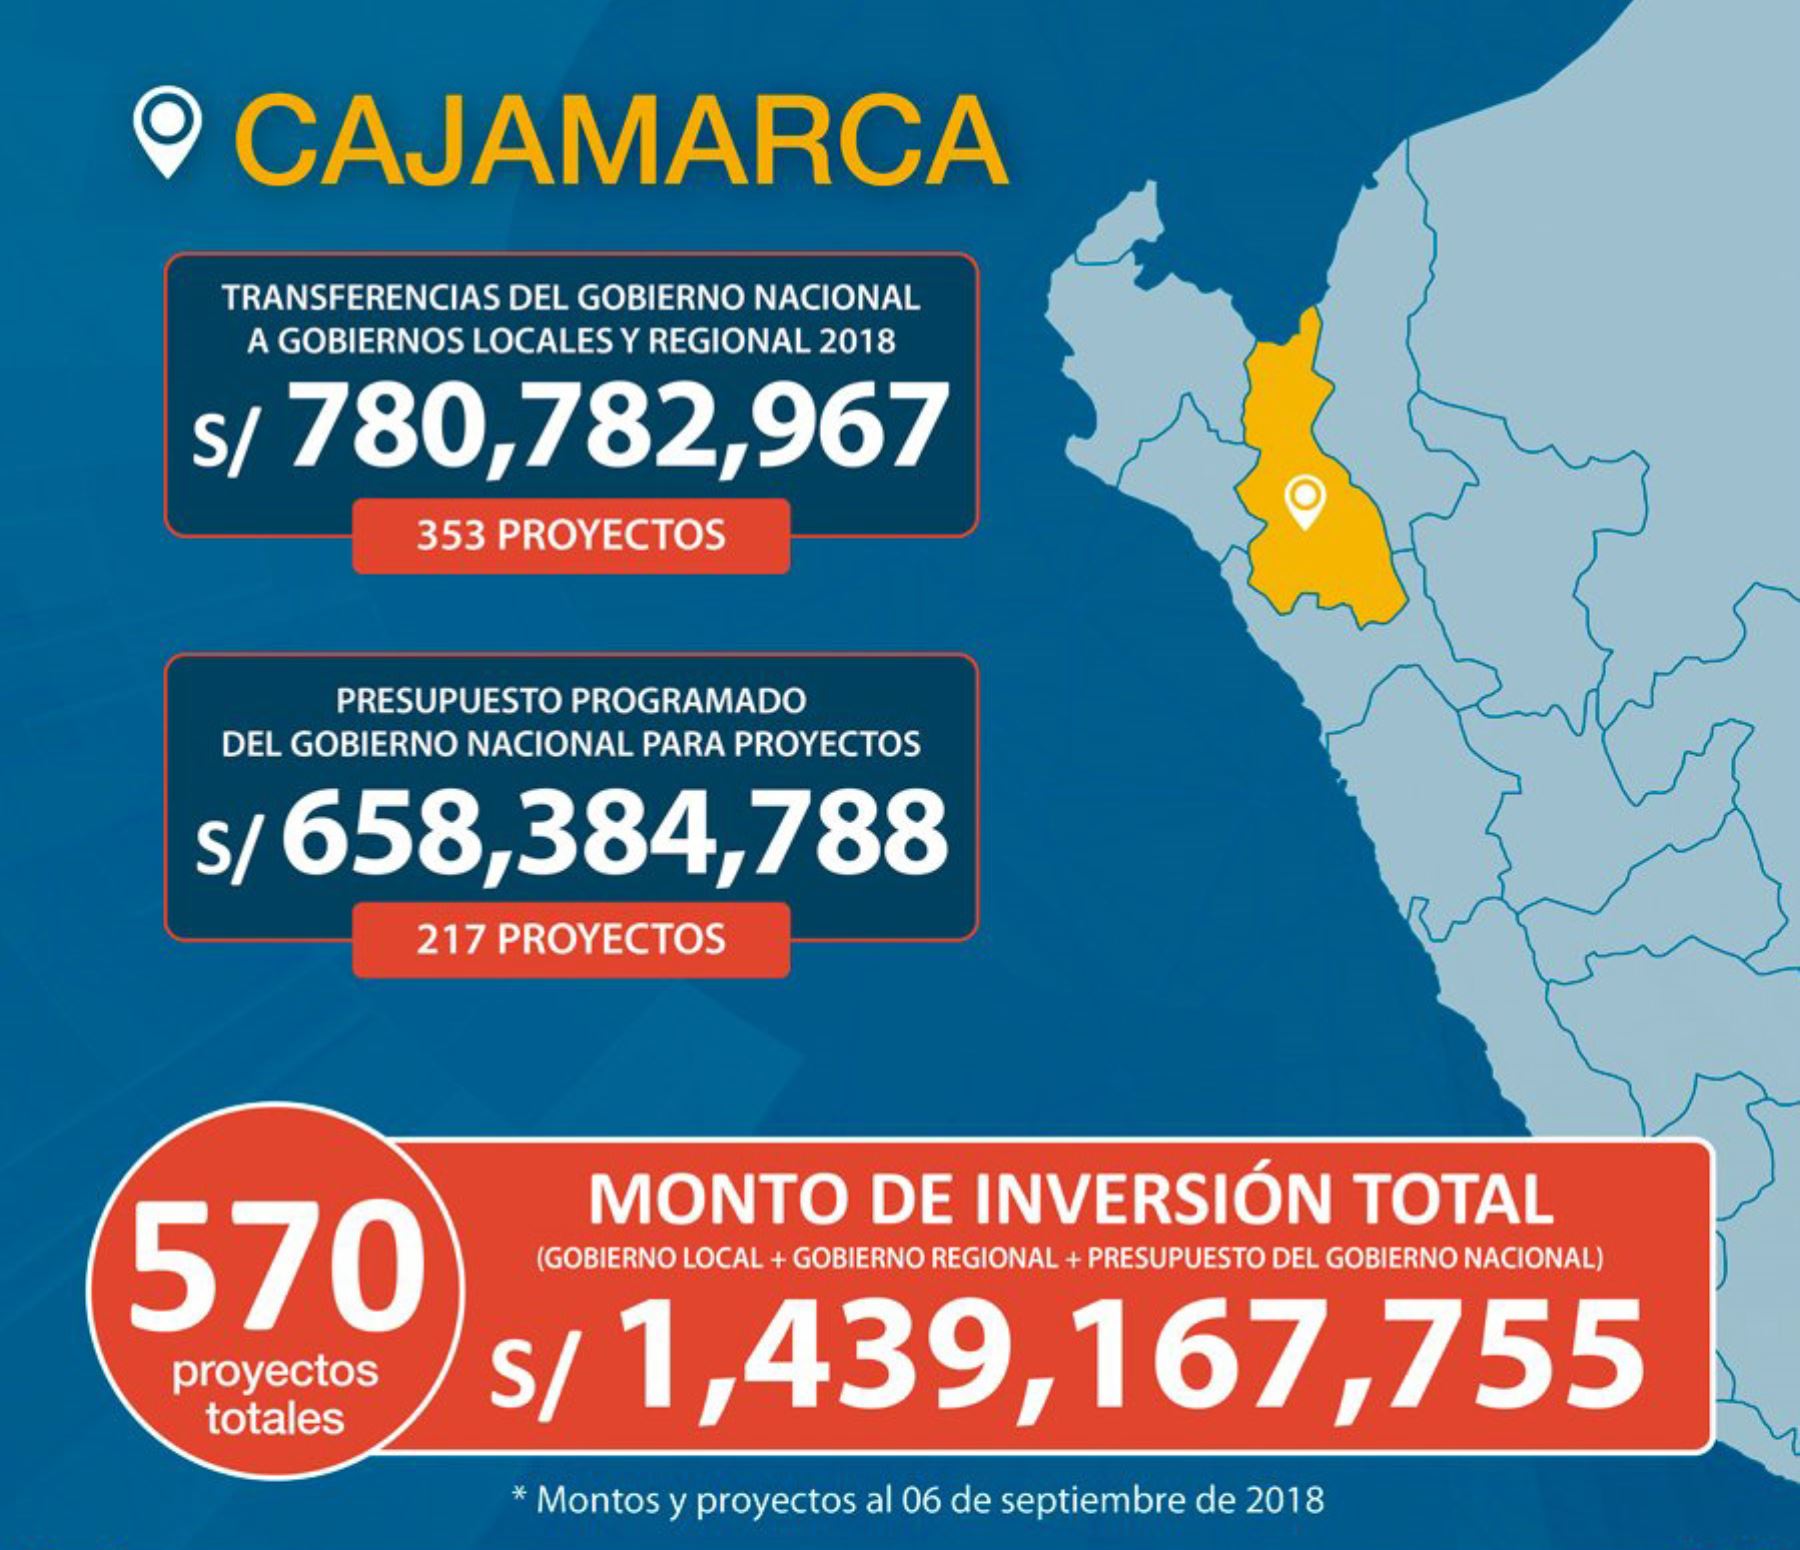 El Estado, en sus distintos niveles de gobierno, tiene en cartera la ejecución de 570 proyectos en la región Cajamarca, con un presupuesto total de 1,439 millones 167,755 soles, en sectores como transportes y comunicaciones, educación, salud, vivienda, construcción y saneamiento, entre otros.